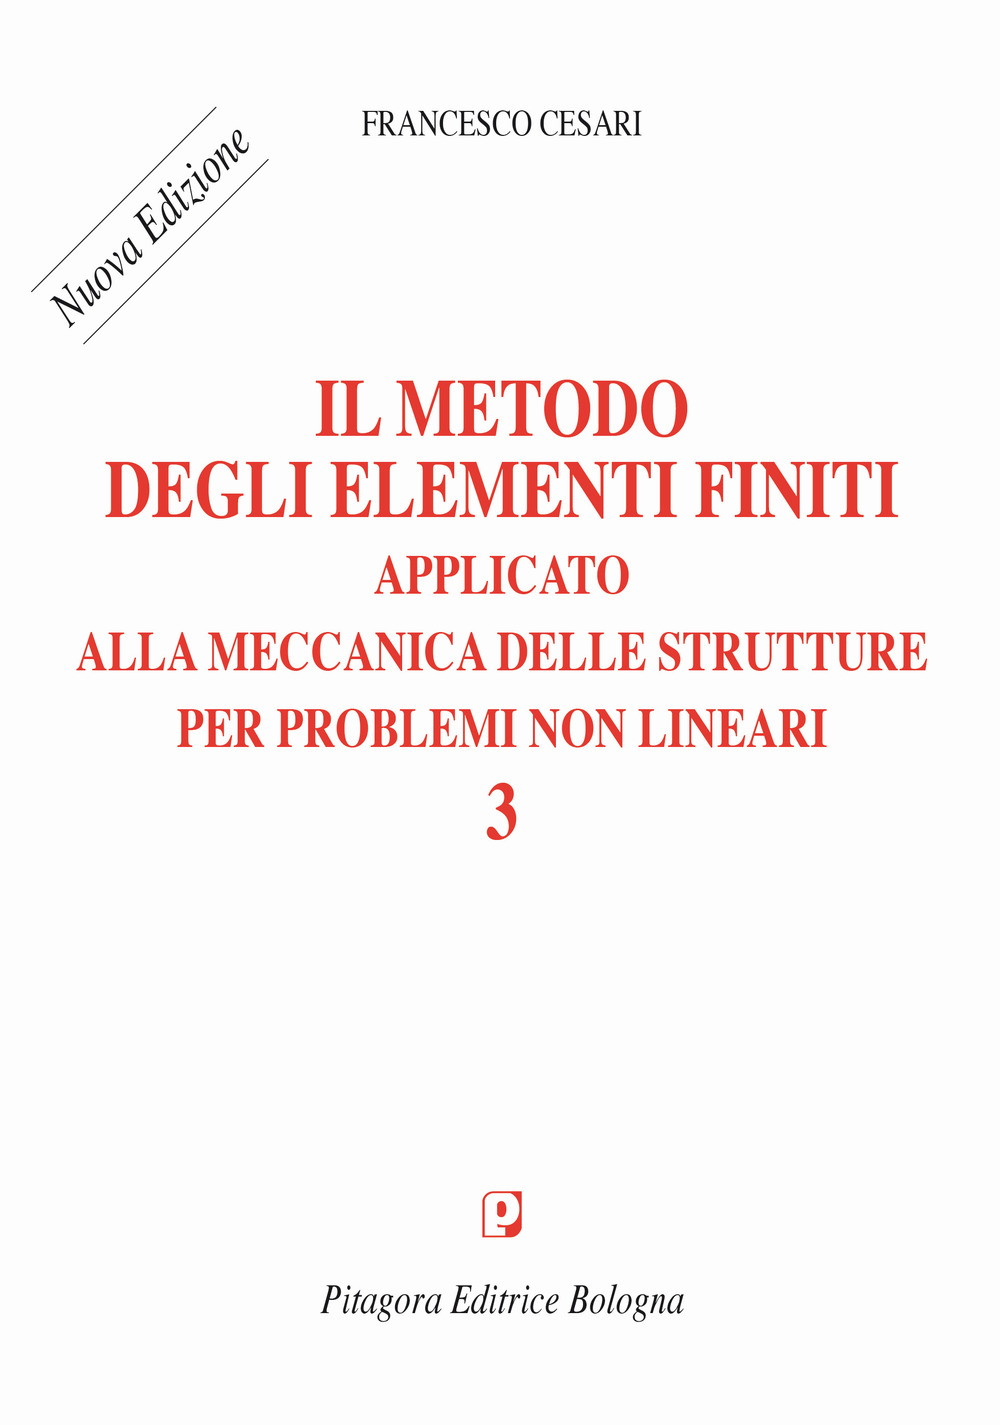 Image of Il metodo degli elementi finiti applicato alla meccanica delle strutture per problemi non lineari. Nuova ediz.. Vol. 3